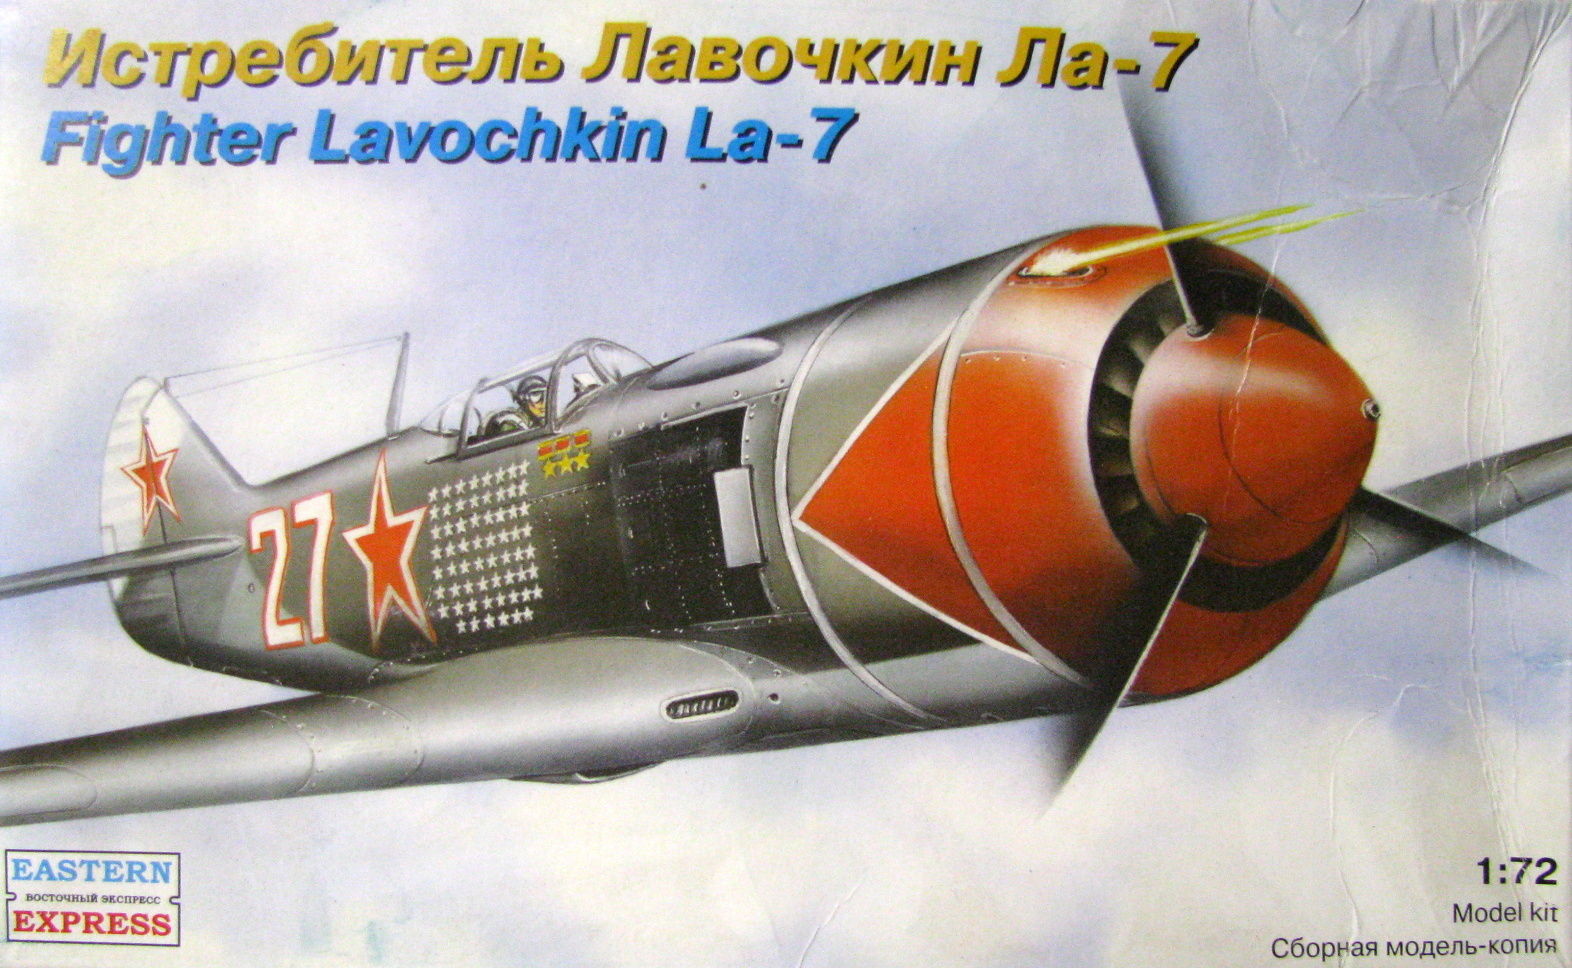 Fighter Lavochkin La-7